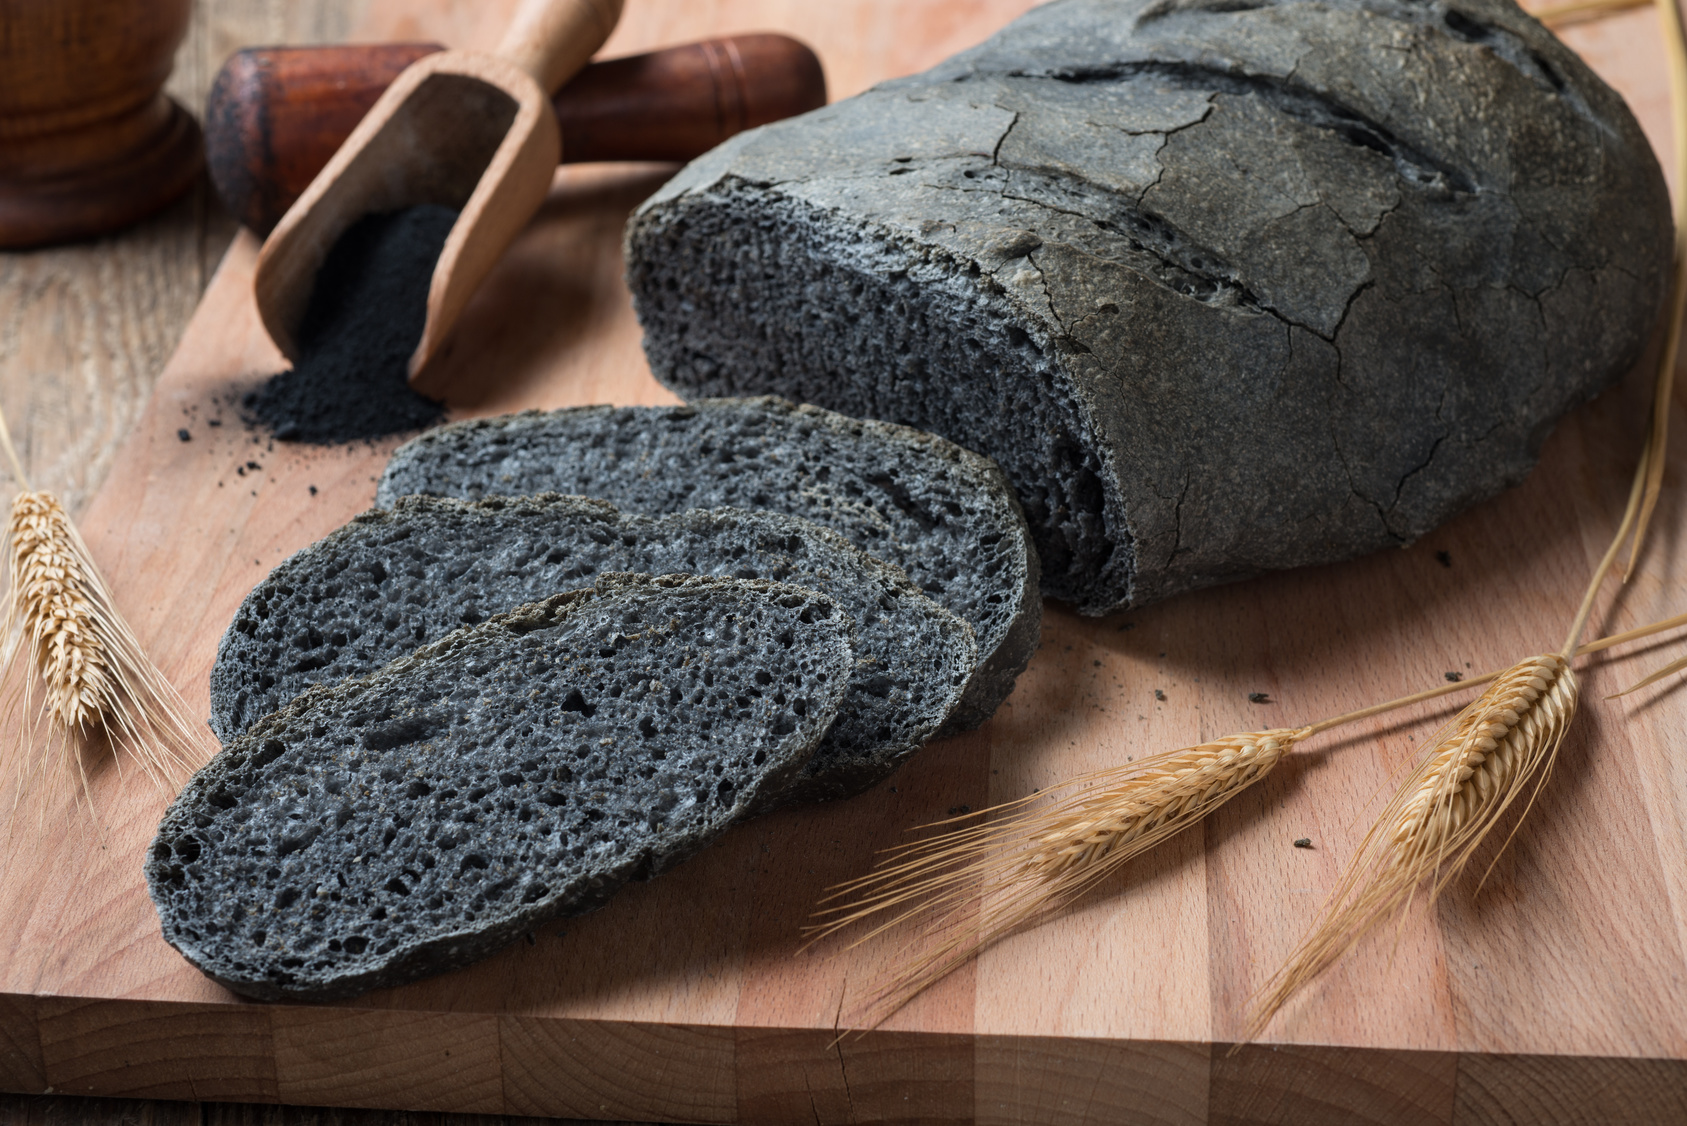 Carbone vegetale nel pane e nei prodotti da forno: fa male?